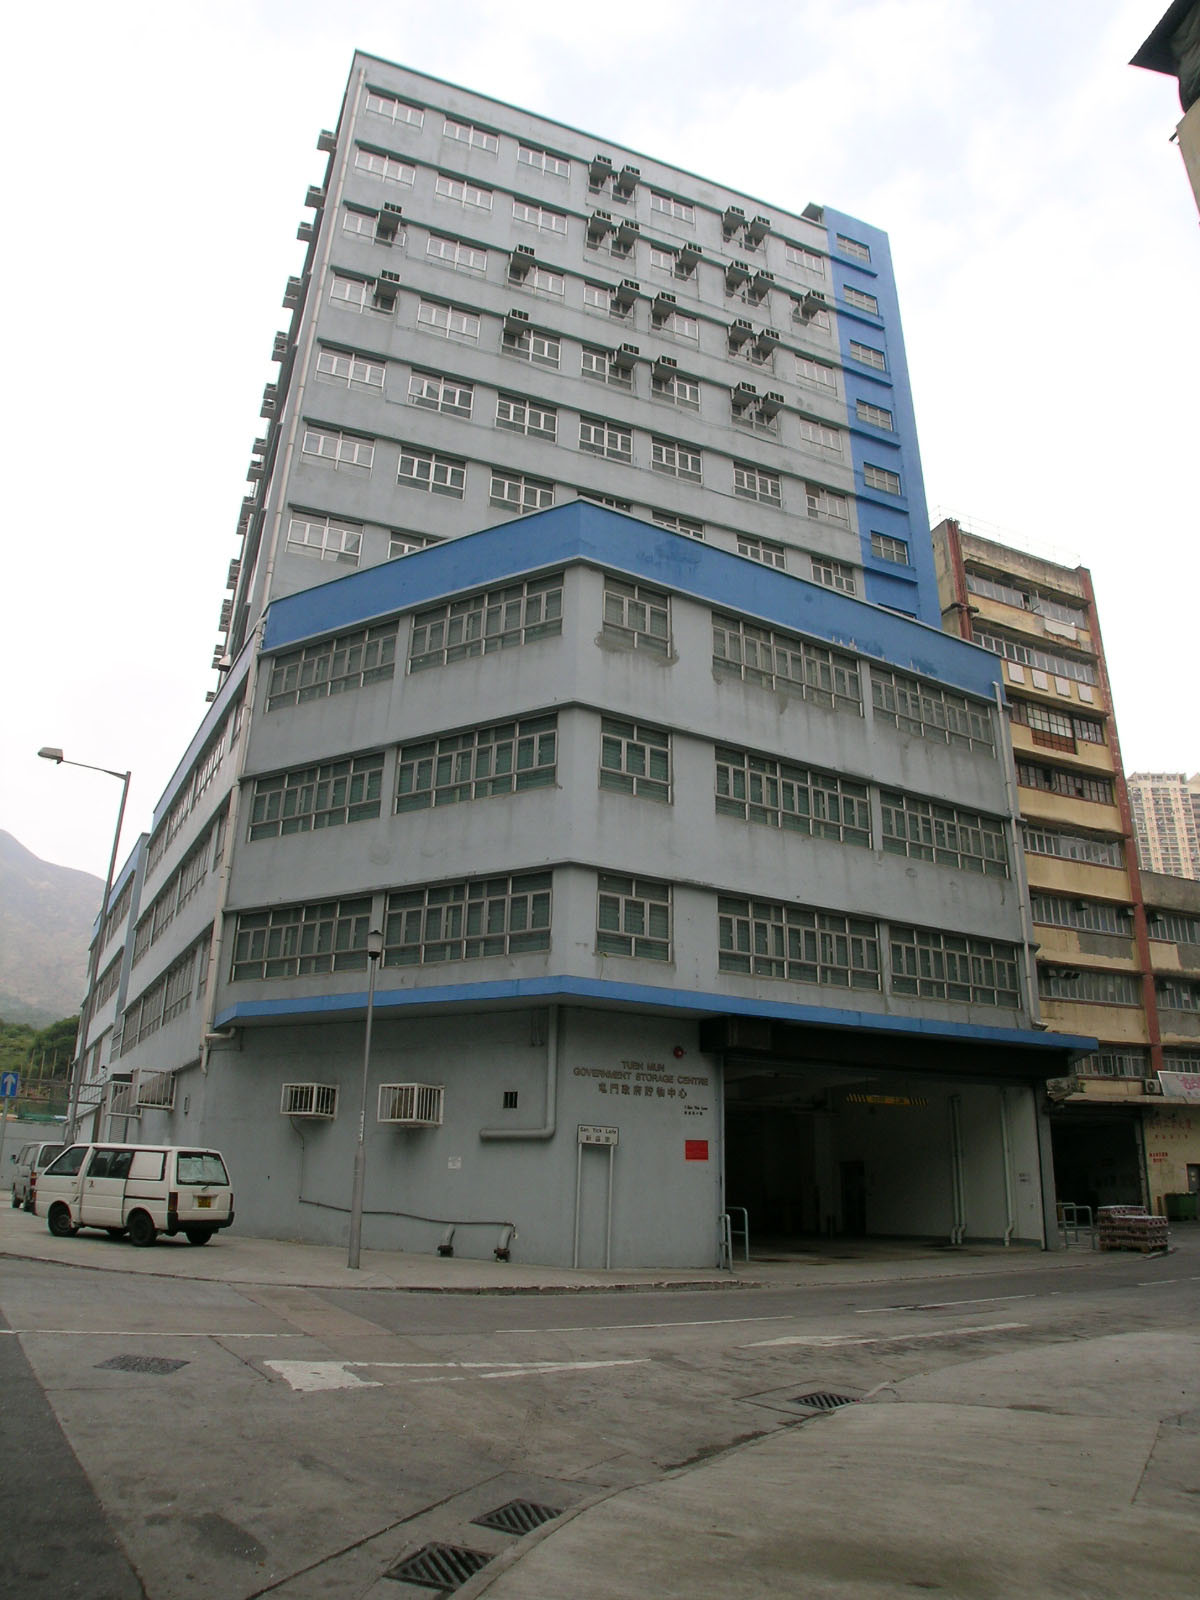 相片 2: 屯門政府貯物中心